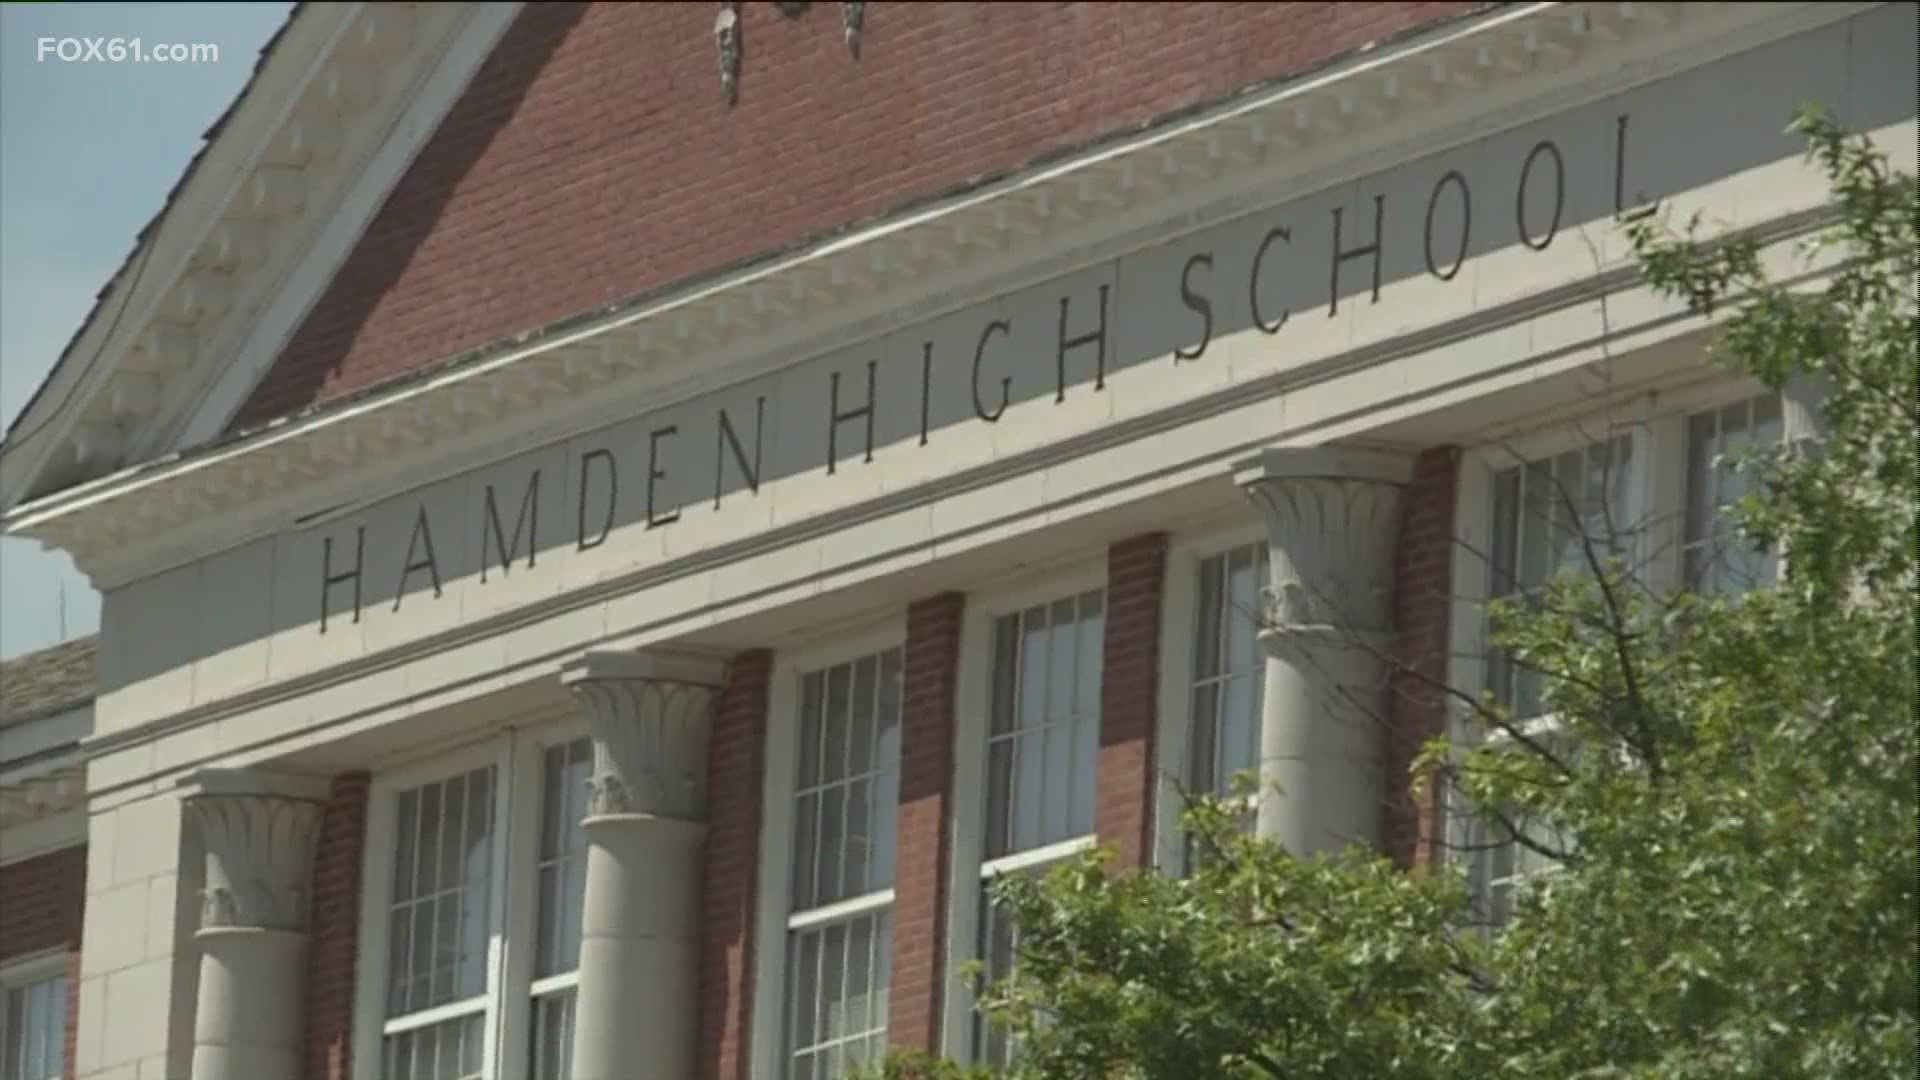 Hamden Public Schools has first day of classes